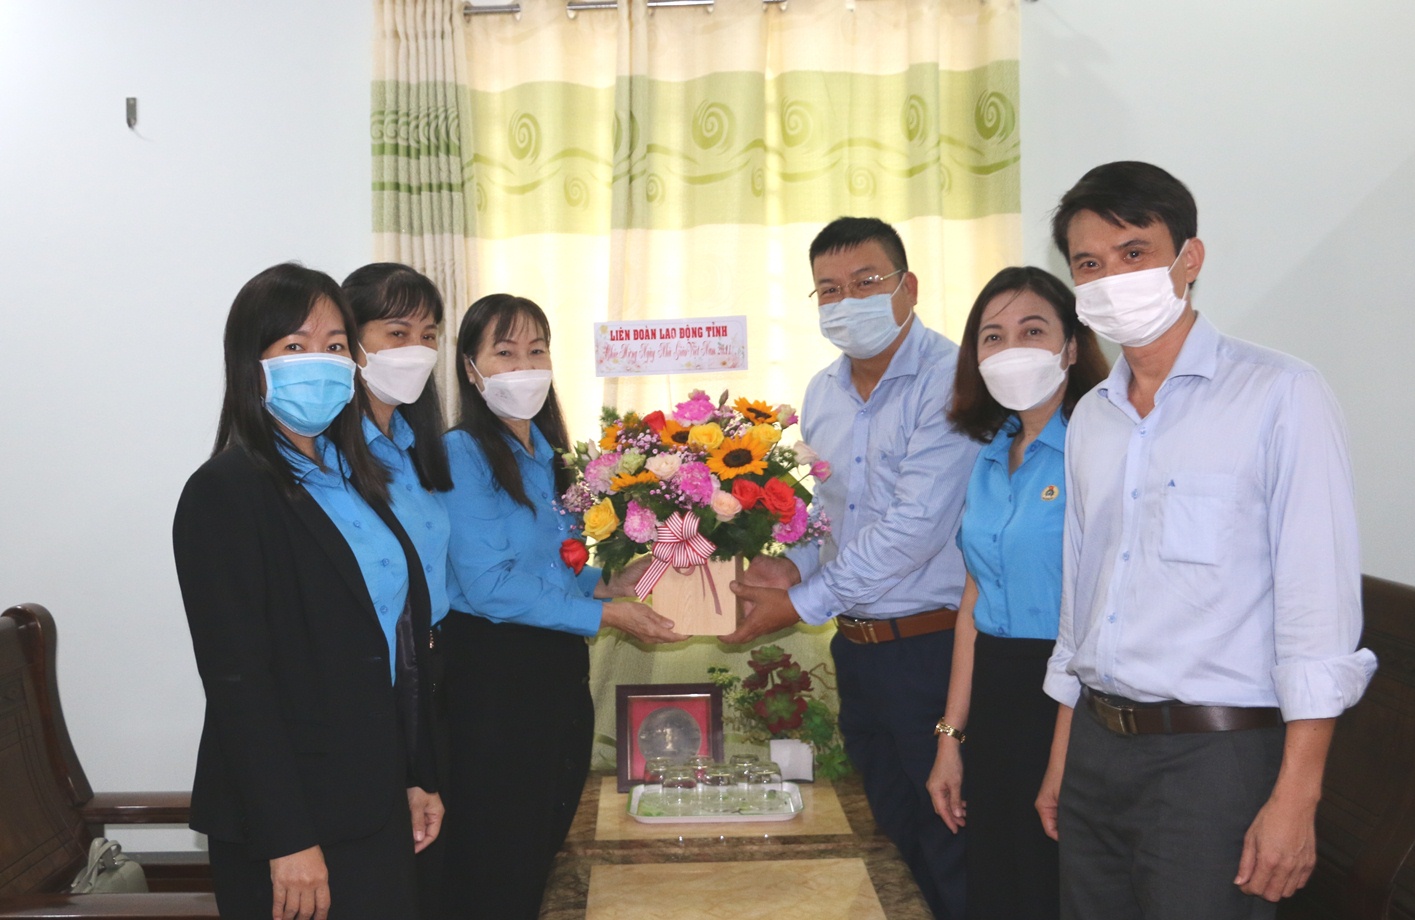 Bà Nguyễn Thị Hằng (thứ 3 từ trái sang) tặng hoa, chúc mừng tại Sở Giáo dục và Đào tạo.